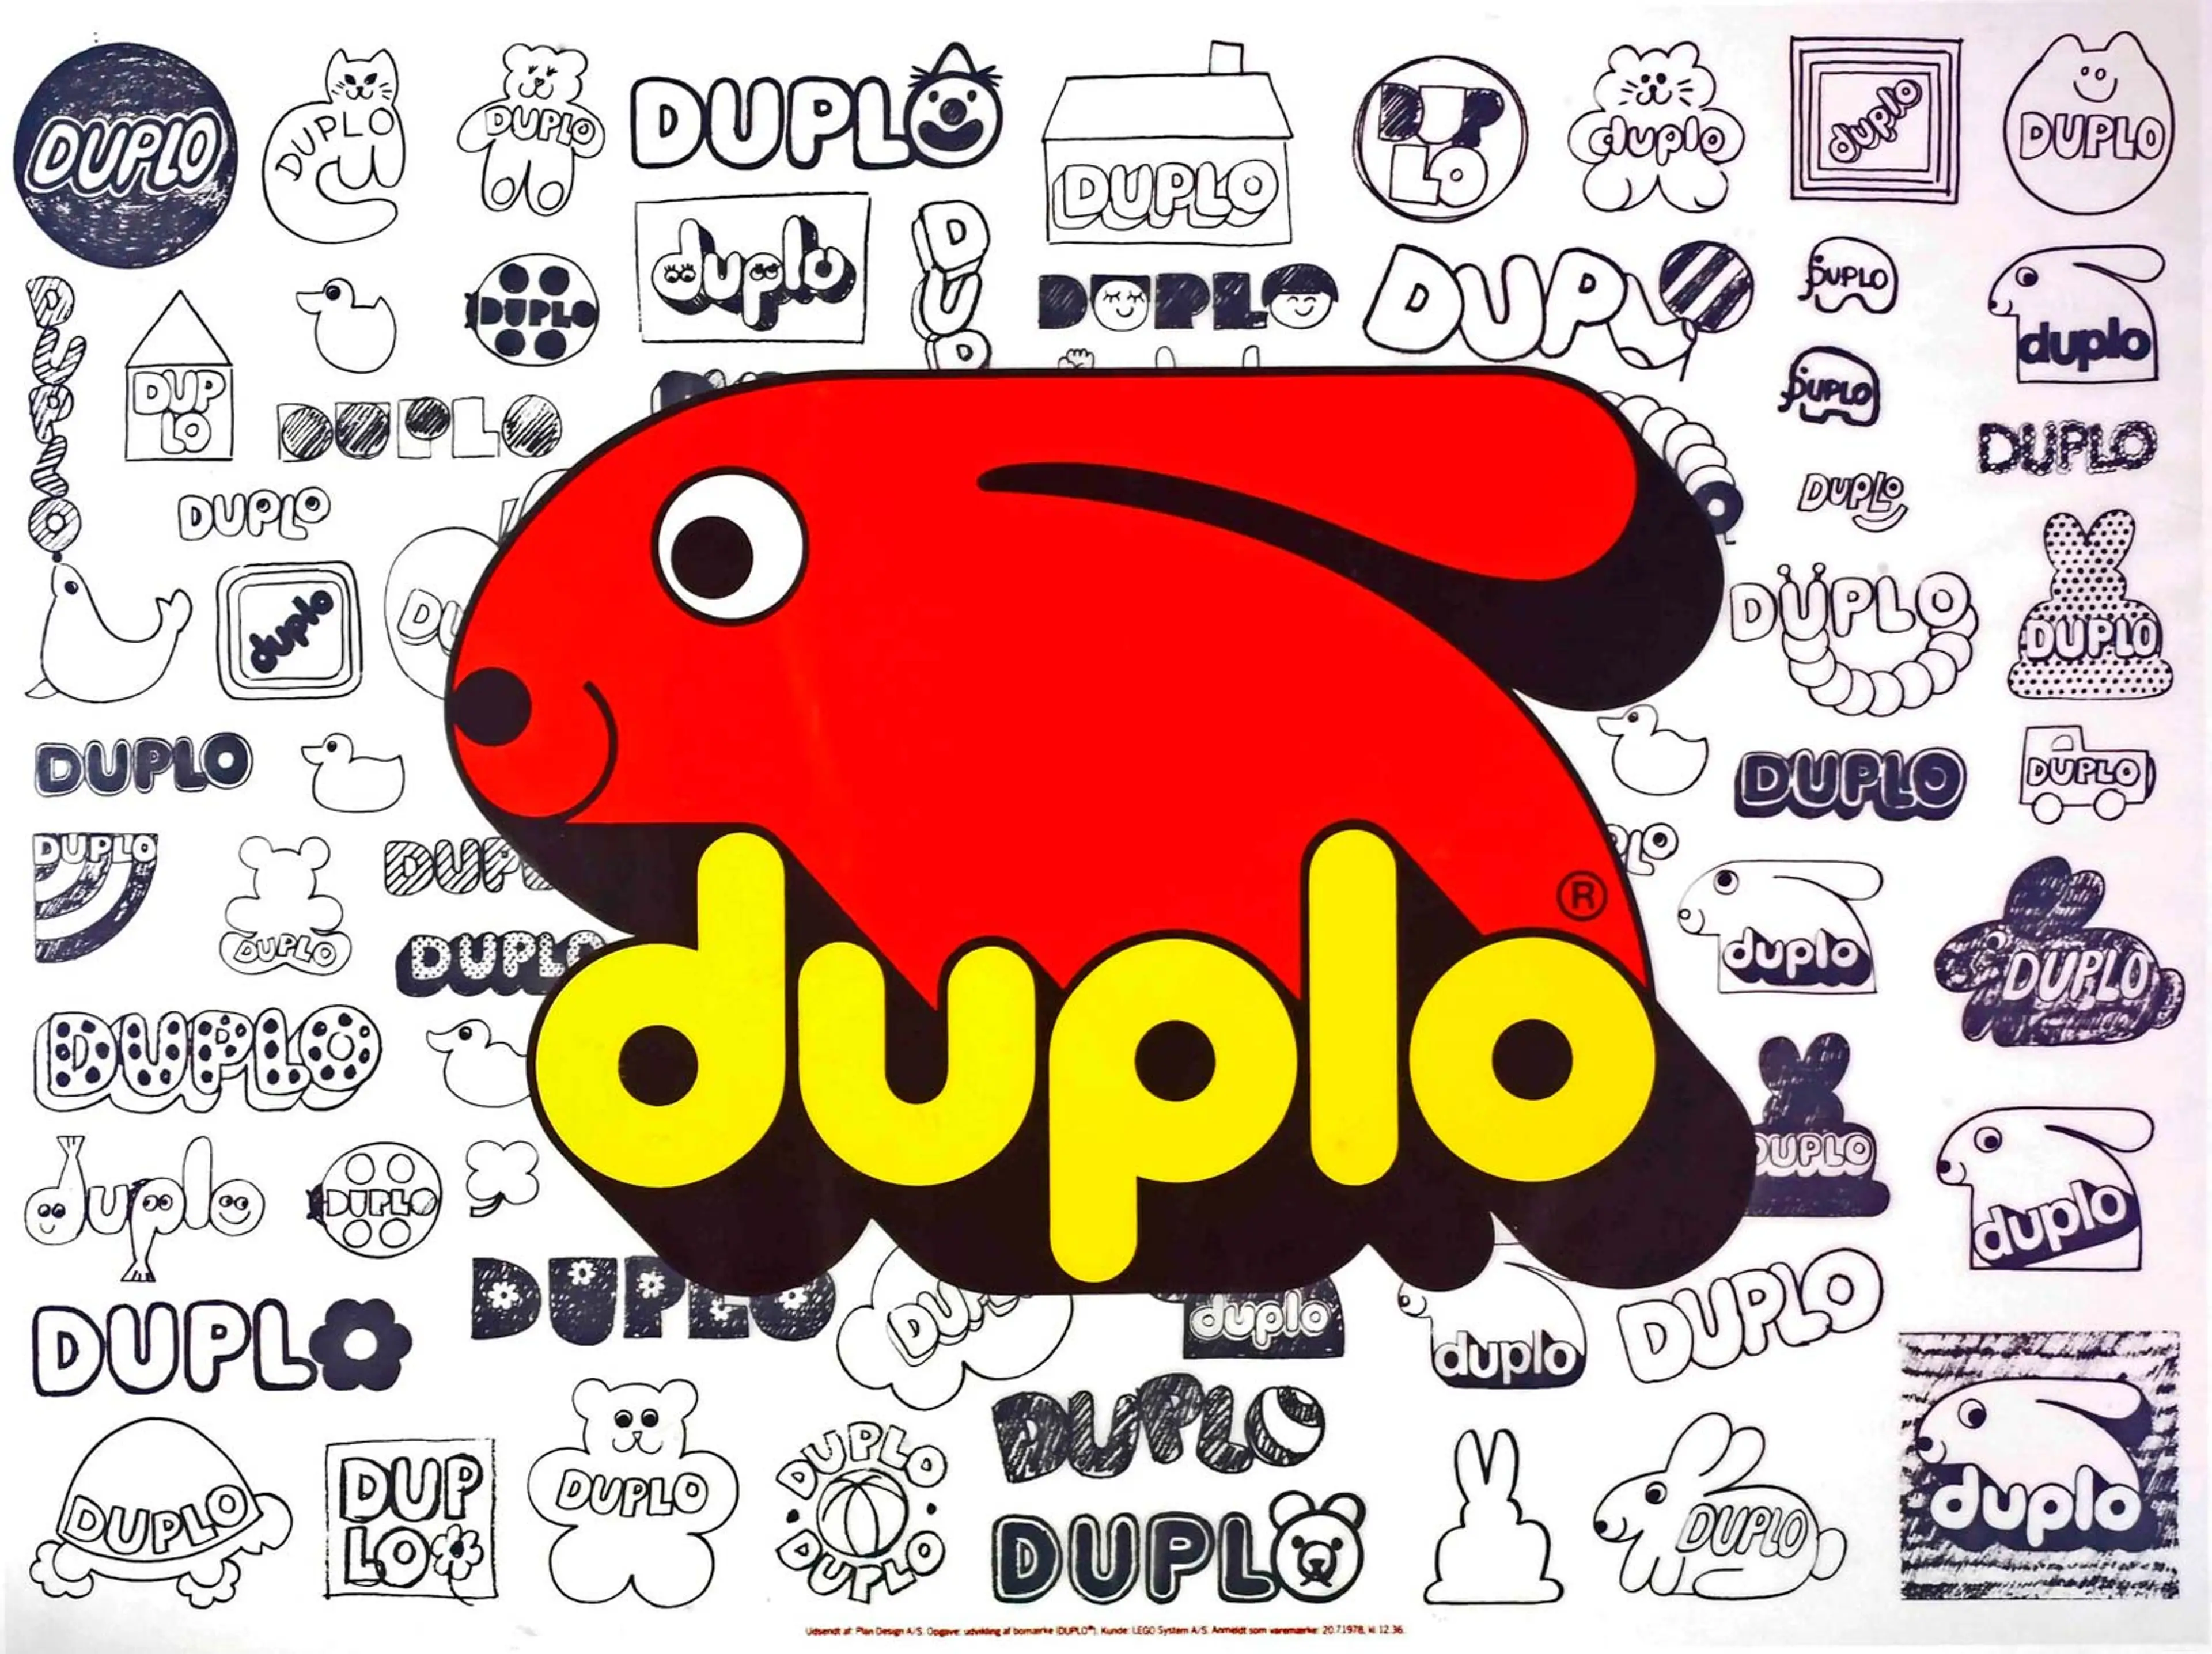 The original LEGO DUPLO logo